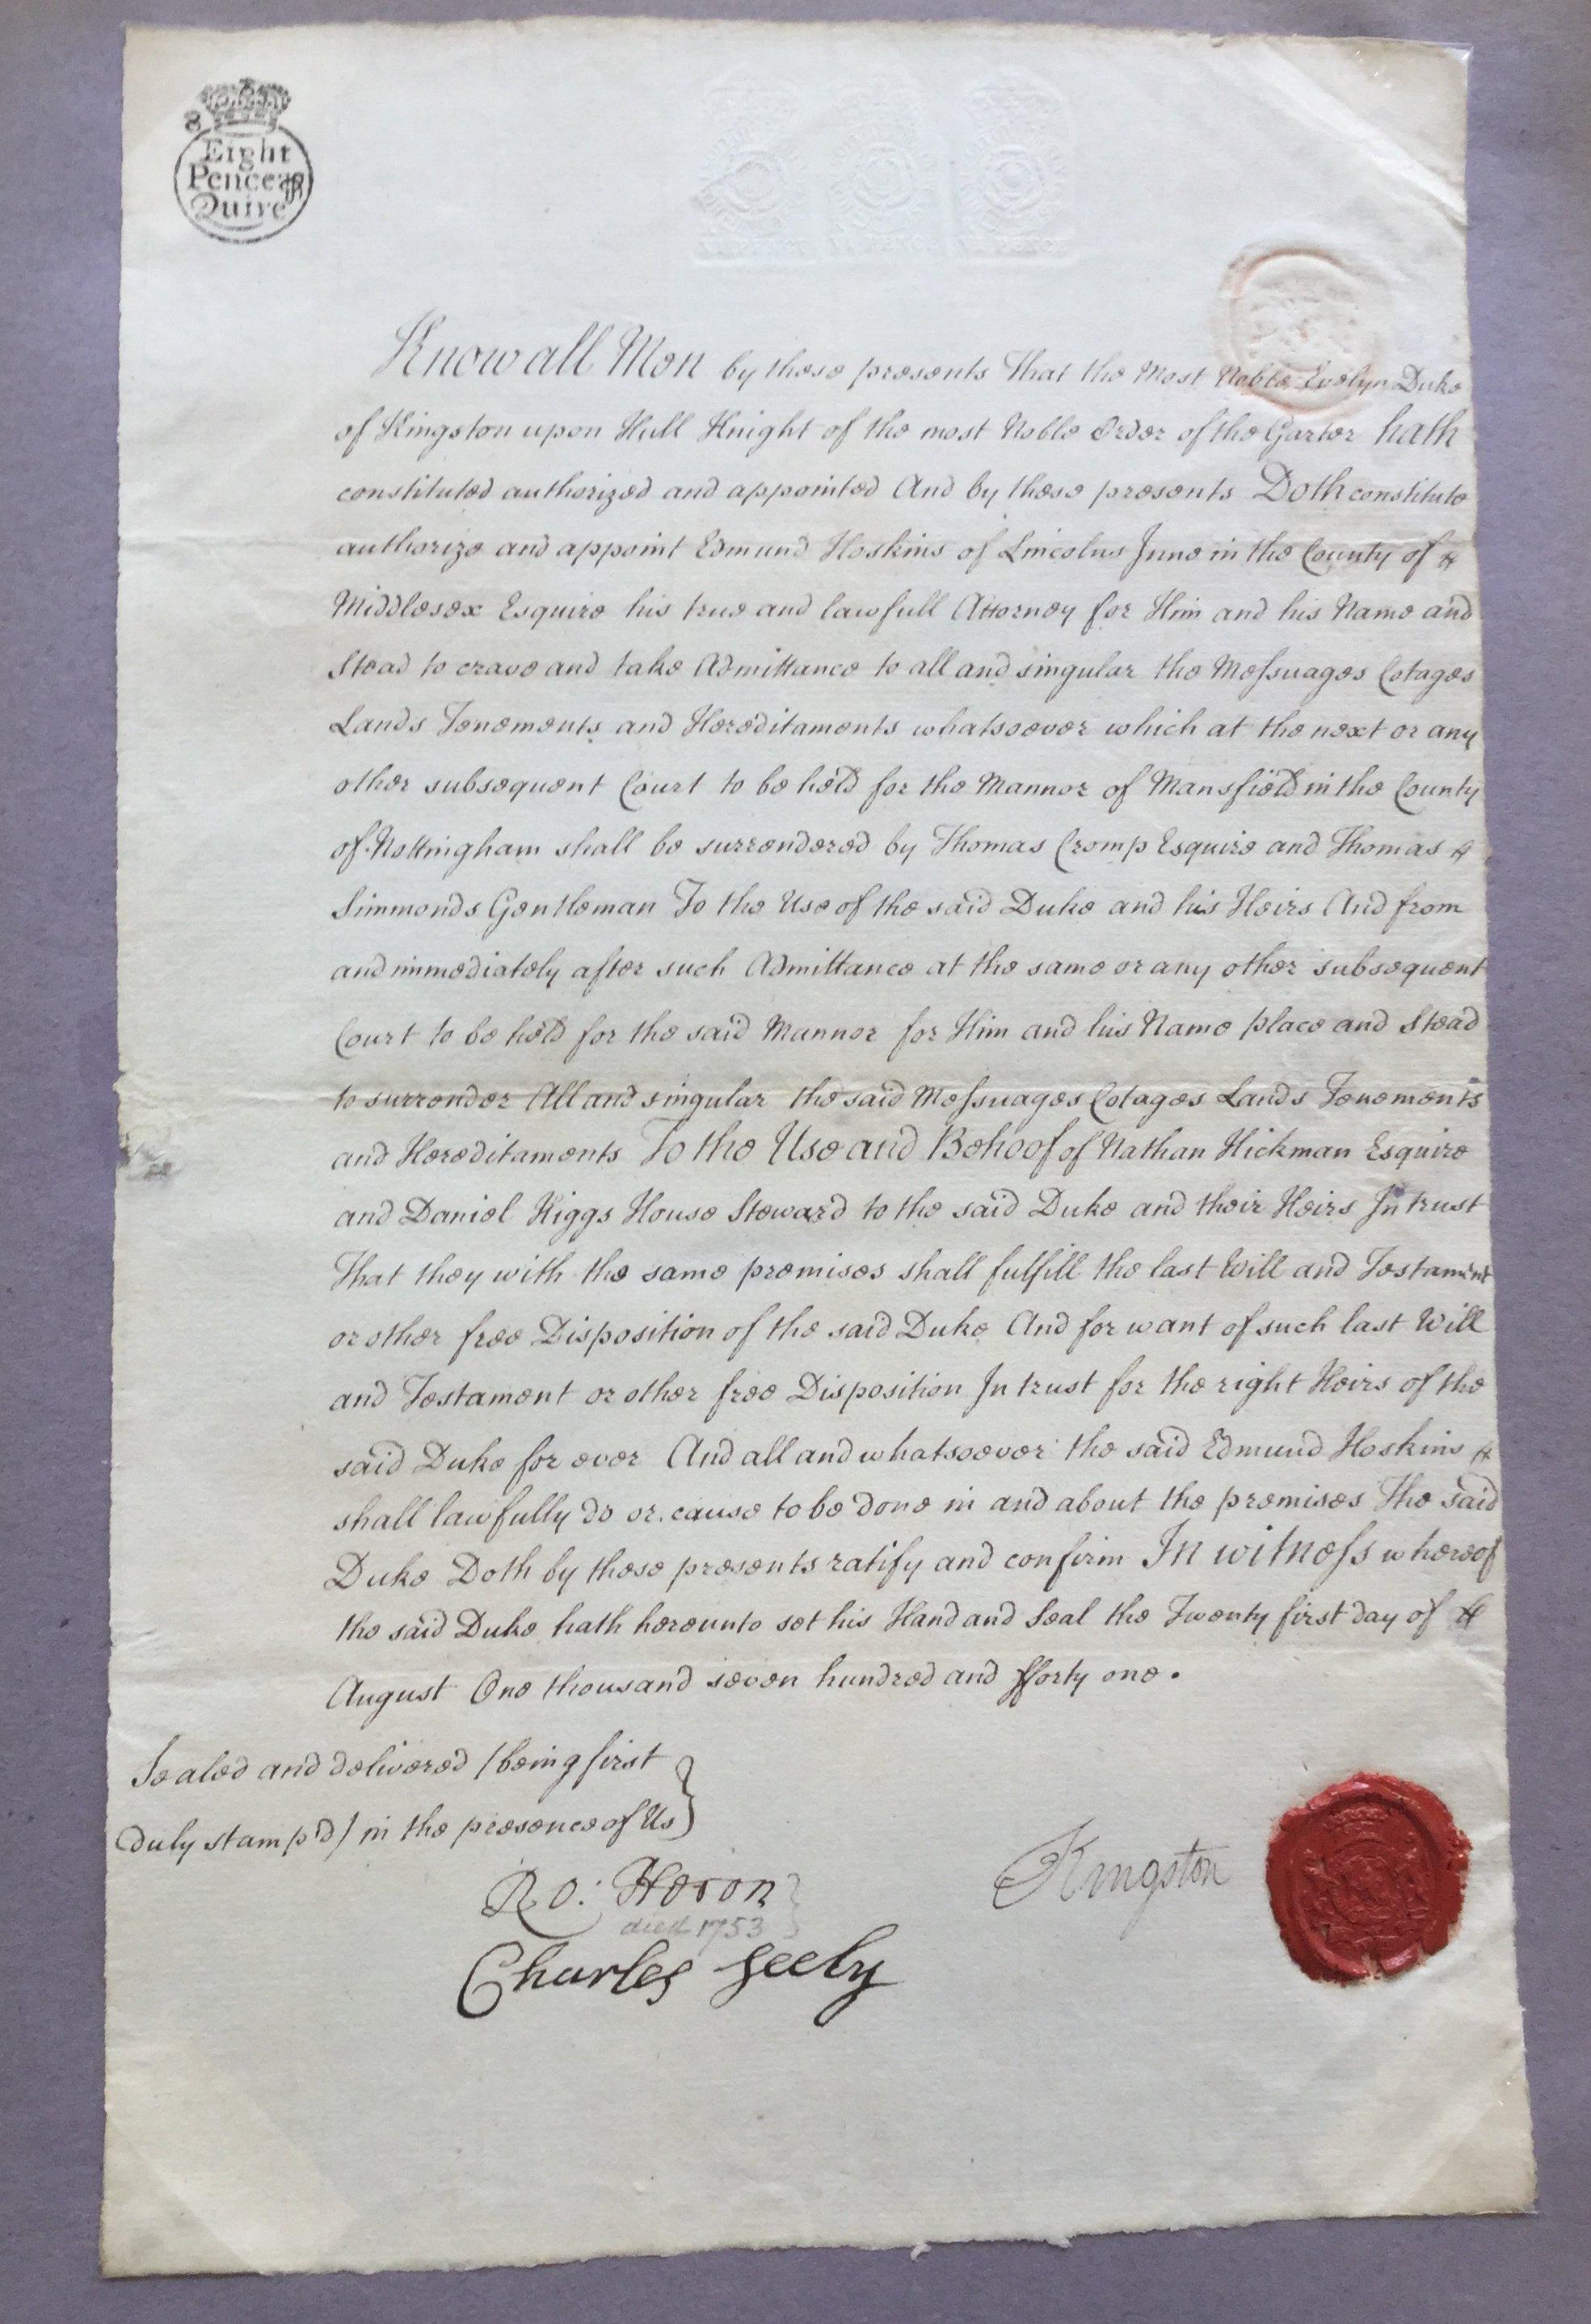 Eine faszinierende Sammlung von Unterschriften und handschriftlichen Briefen des britischen Adels aus dem 18. und 19. 
Zu den Namen gehören:

11. Herzog von Norfolk
3. Herzog von Northumberland
5. Graf von Selkirk
Markgraf von Granby
1.